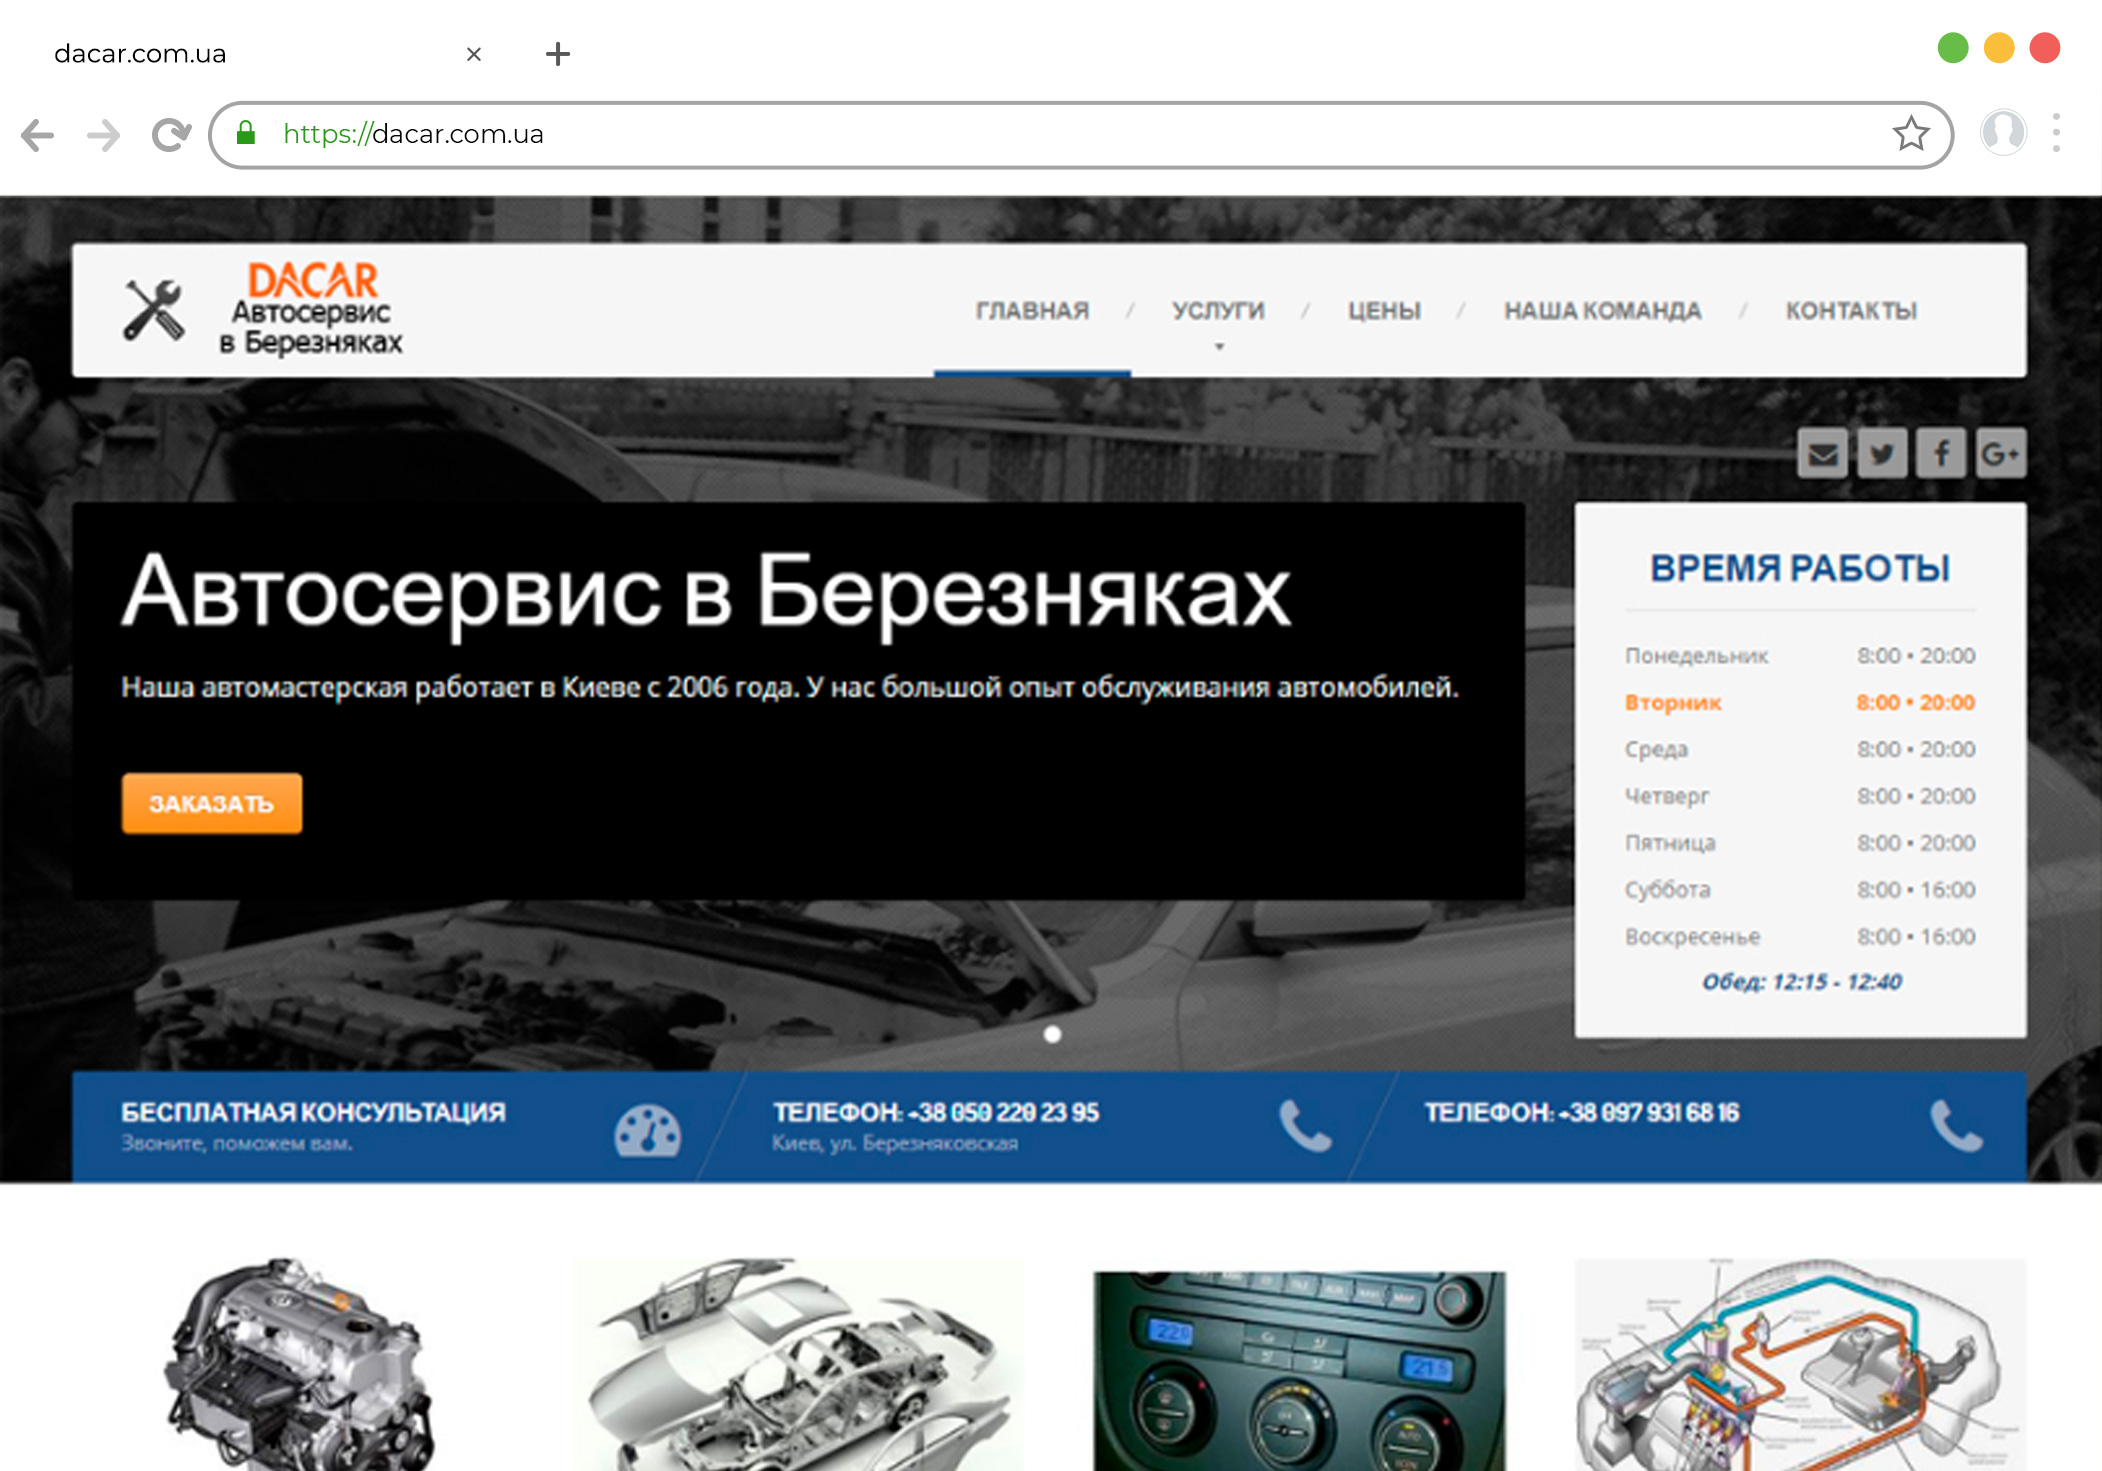 Разработка сайта автосервиса на Wordpress dacar.kiev.ua